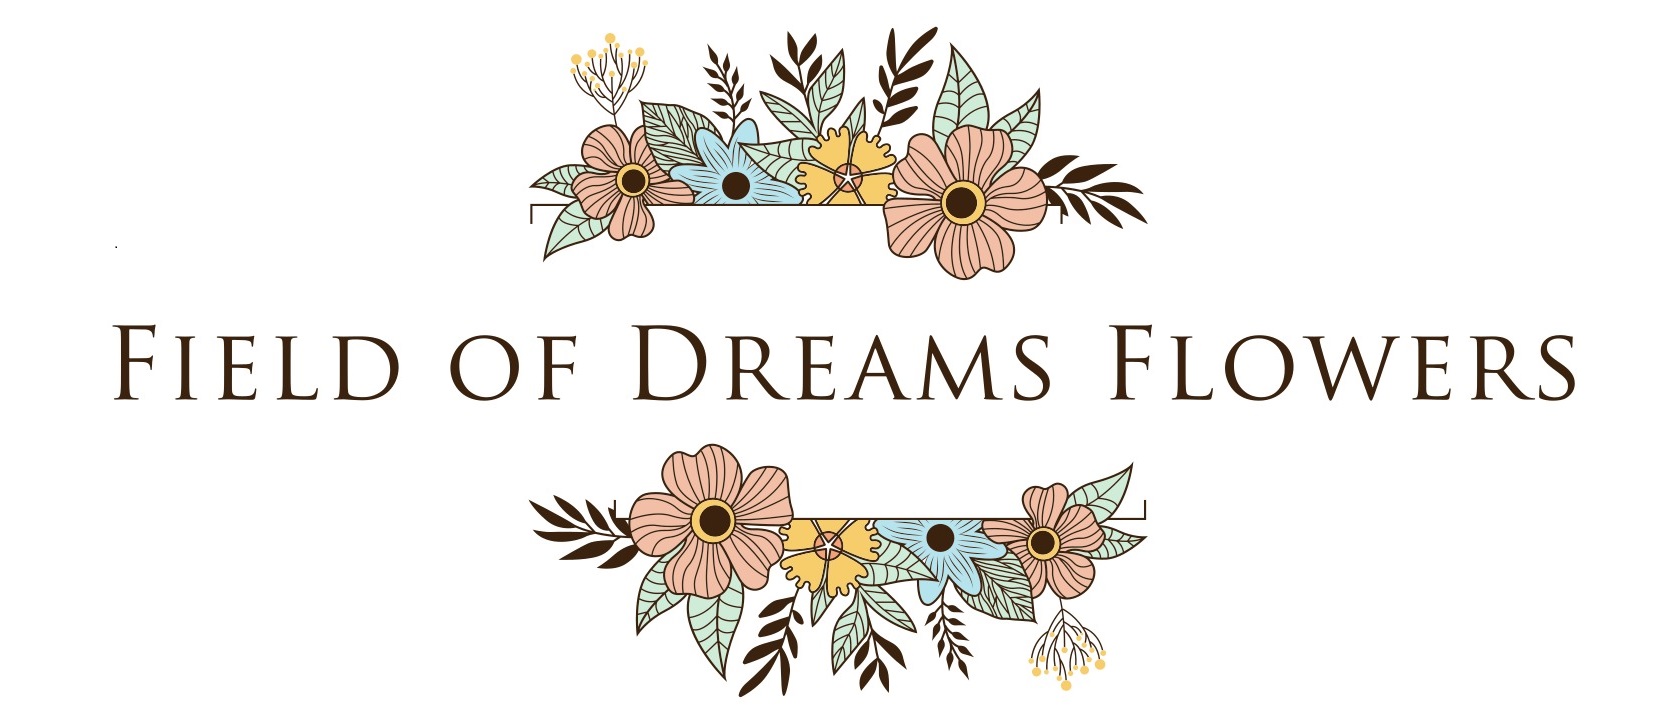 Field of Dreams Flowers